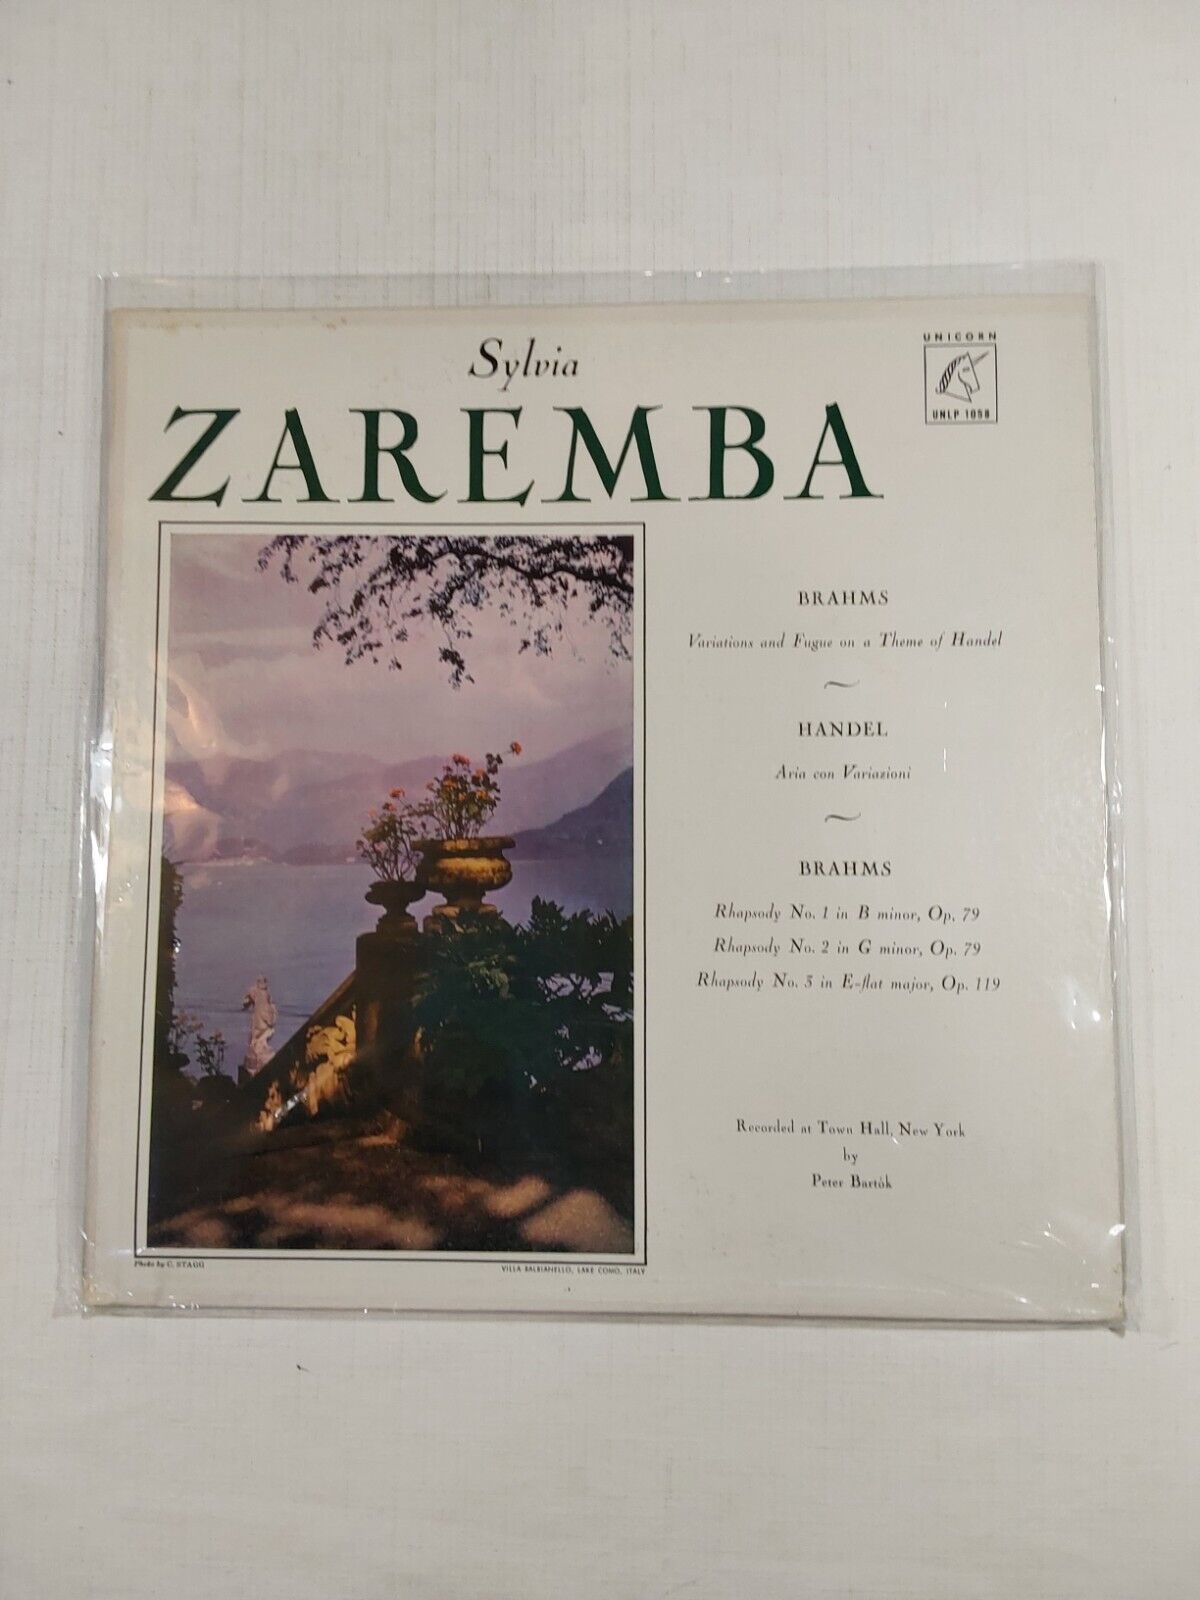 Sylvia Zaremba Plays By Peter Bartok 33RPM Vinyl Record